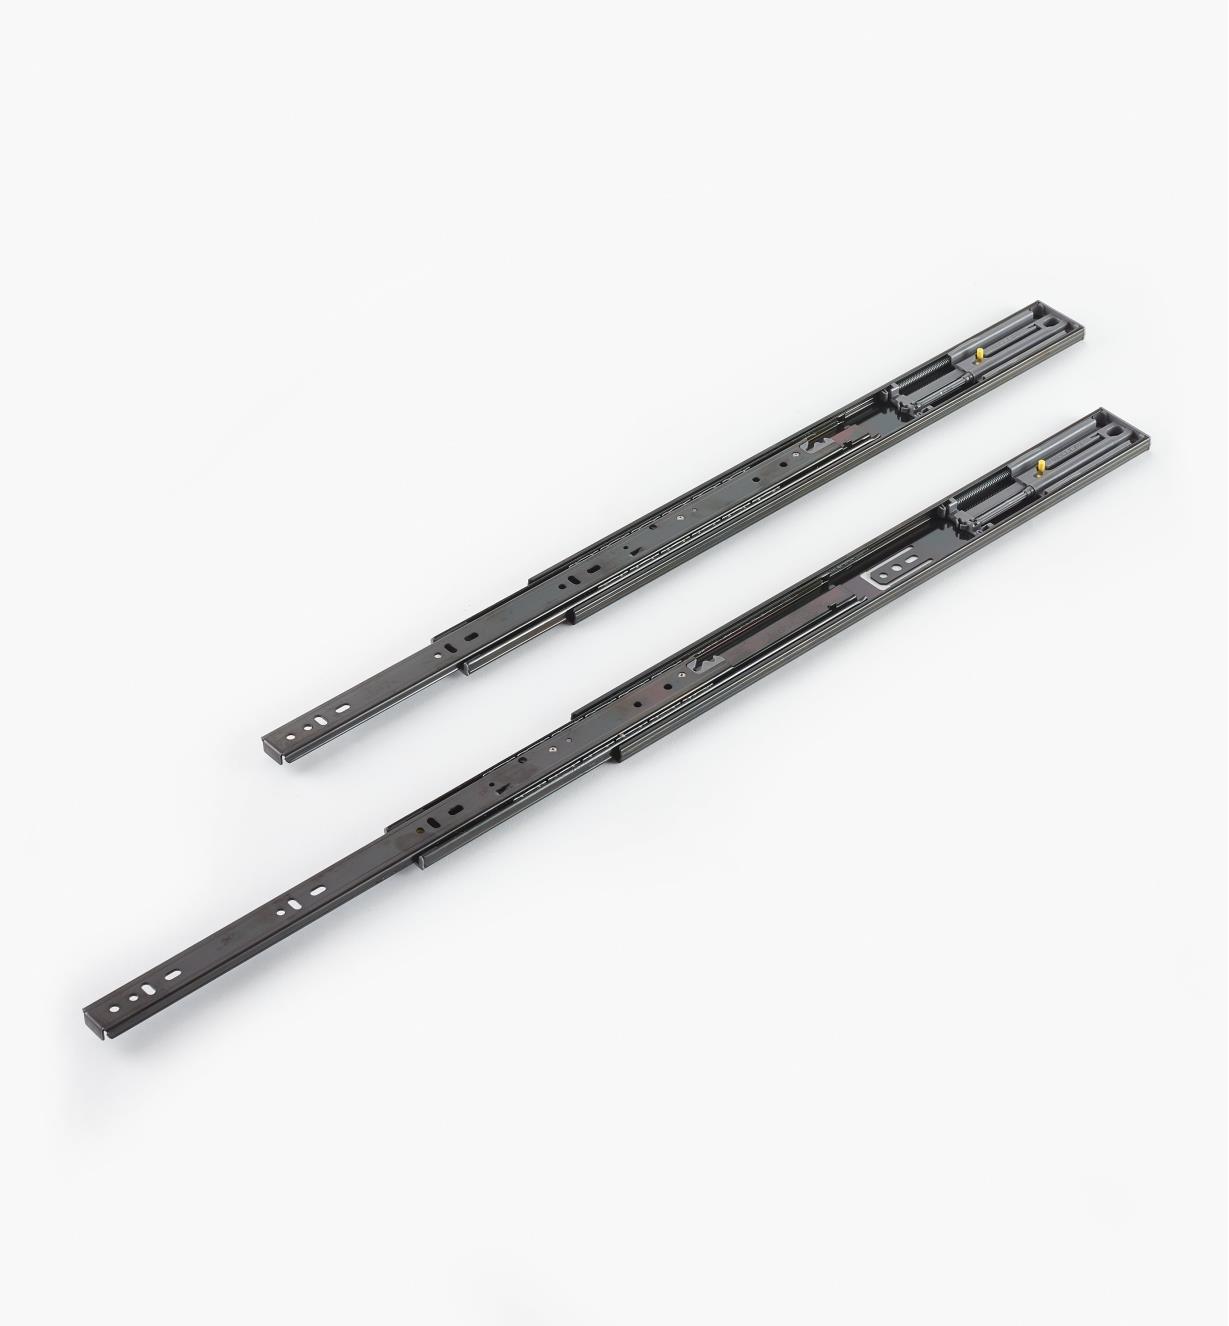 02K5245 - Black Finish, 450mm (18"), Soft-Closing Full-Extension Slides, pr. (100 lb)